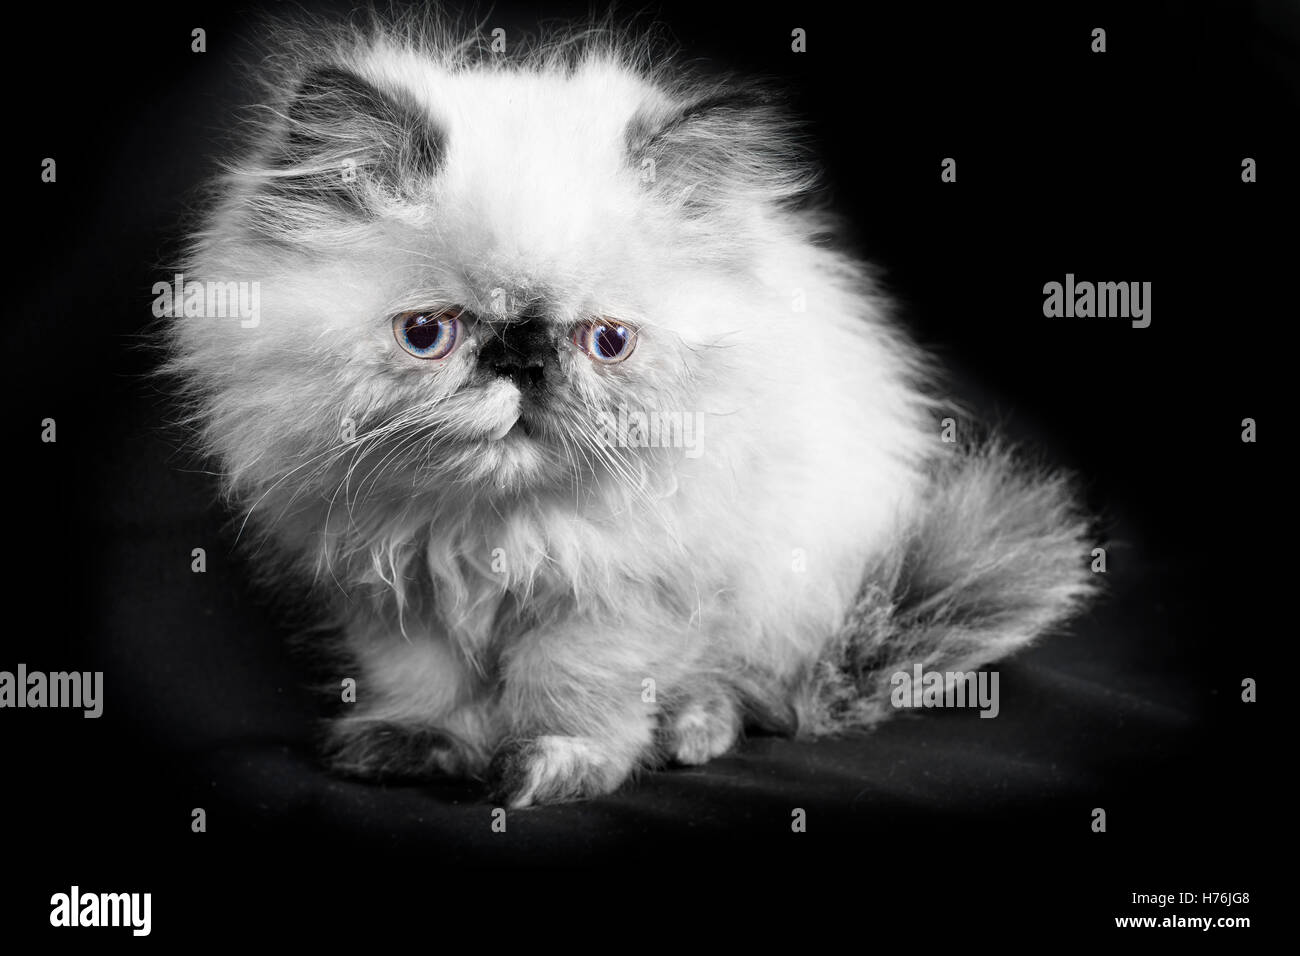 Un jeune, deux mois persan himalayen Blue Point - chaton en noir et blanc avec une touche de couleur dans les yeux Banque D'Images